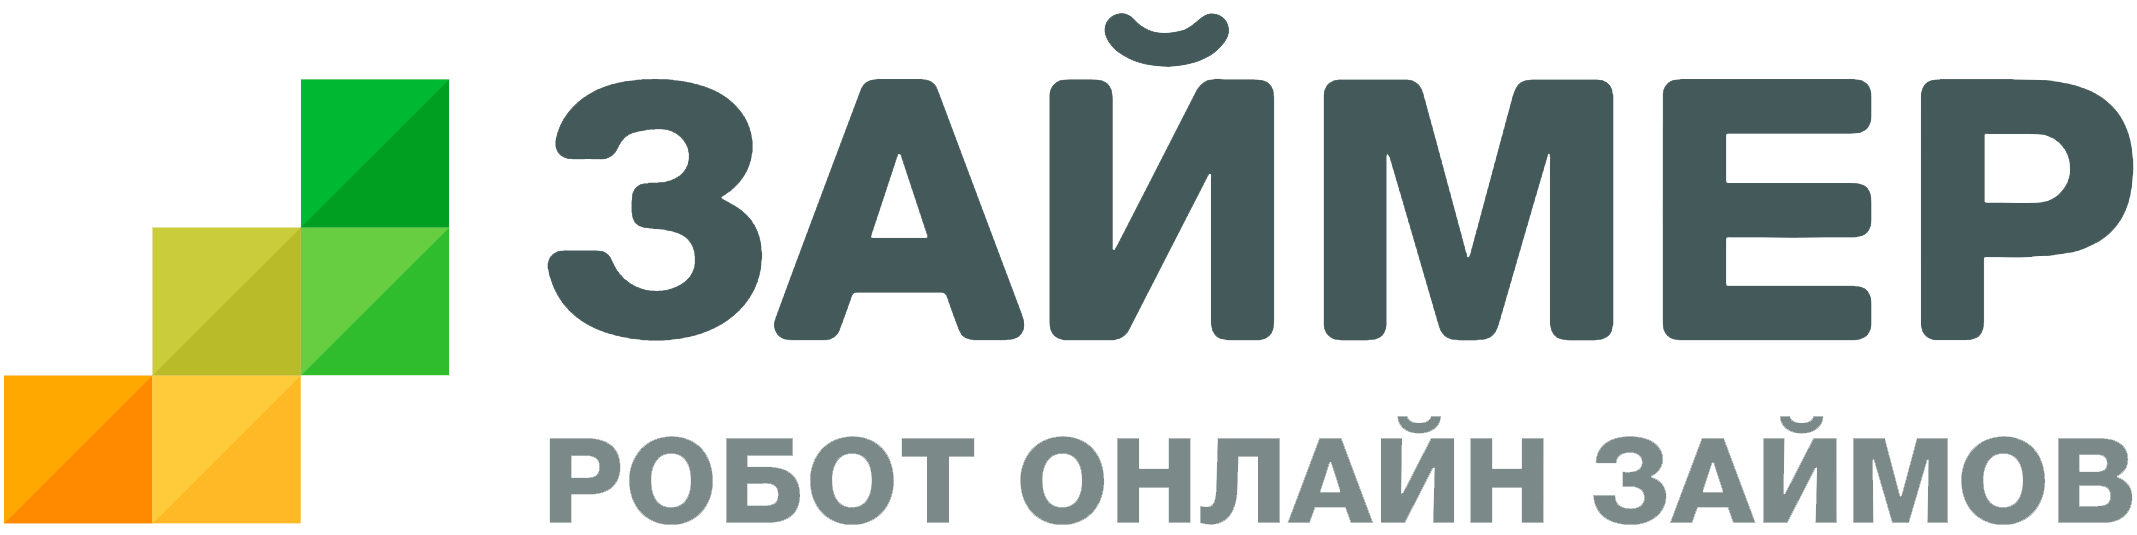 Логотип Микрофинансовой организации Займер